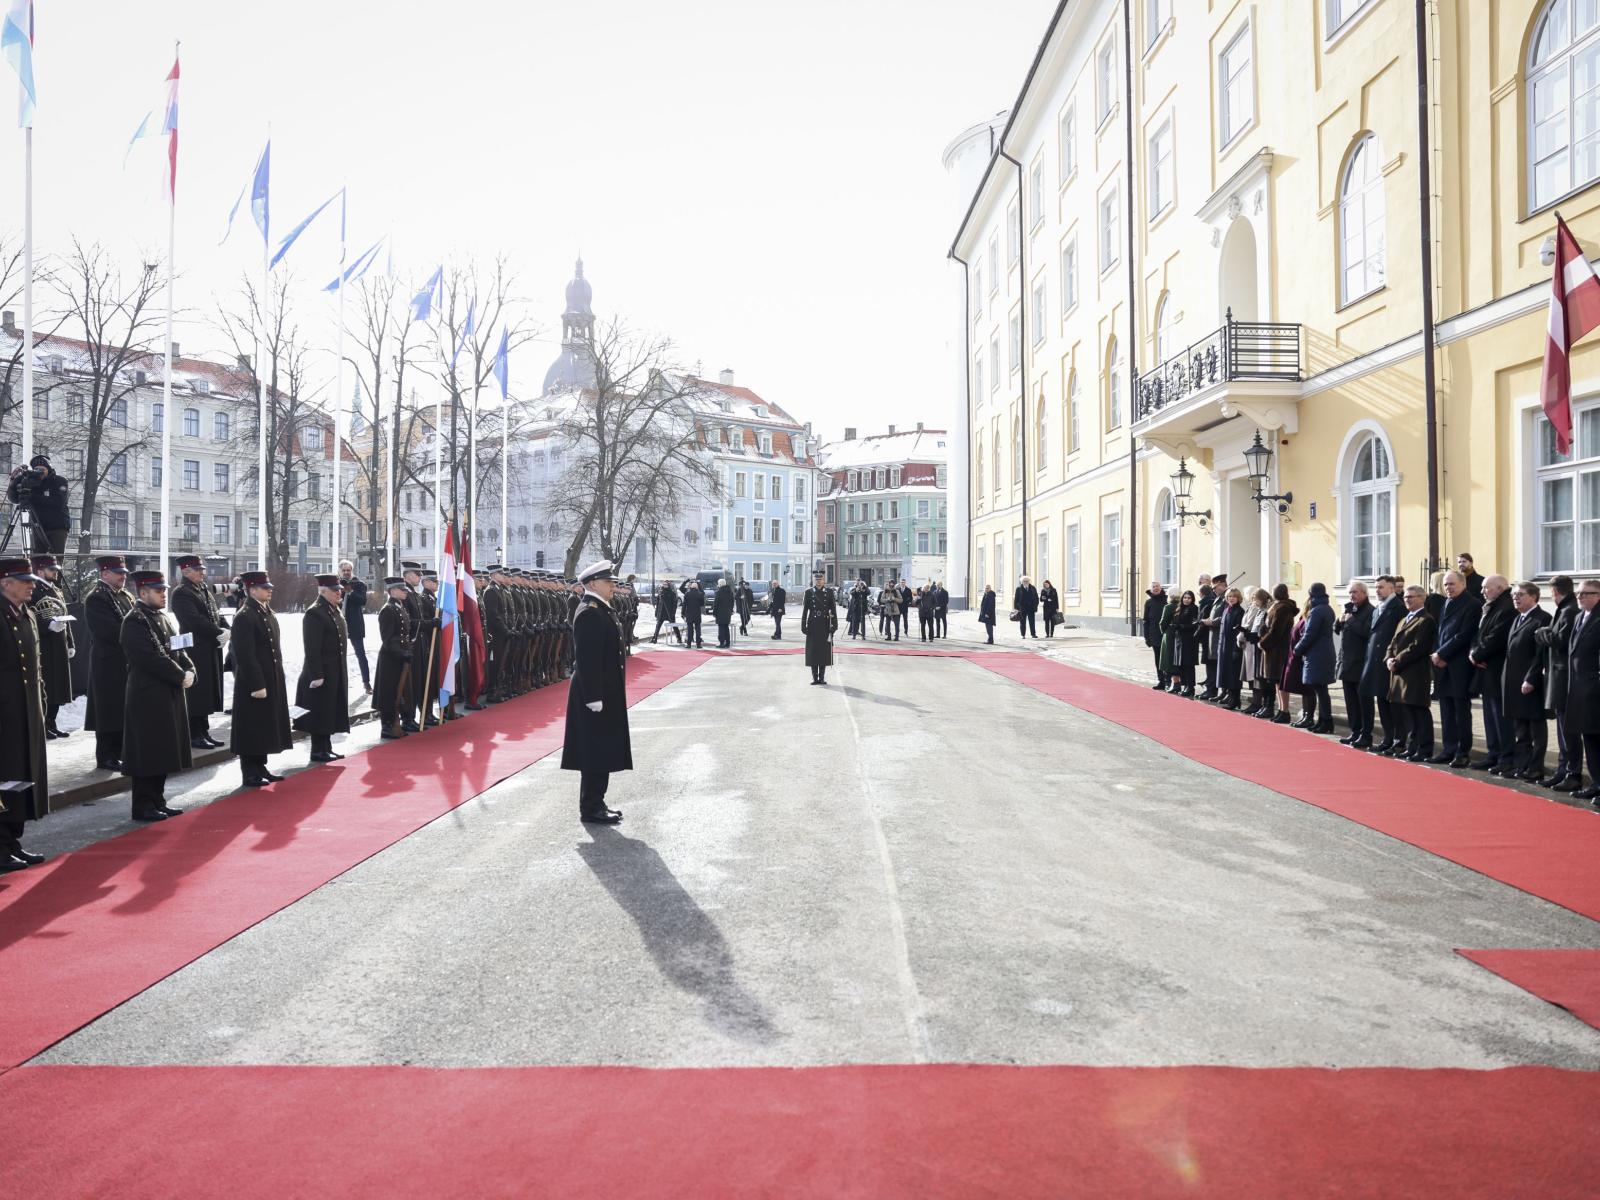 Le parvis du Château de Riga prêt pour la cérémonie d'accueil officielle